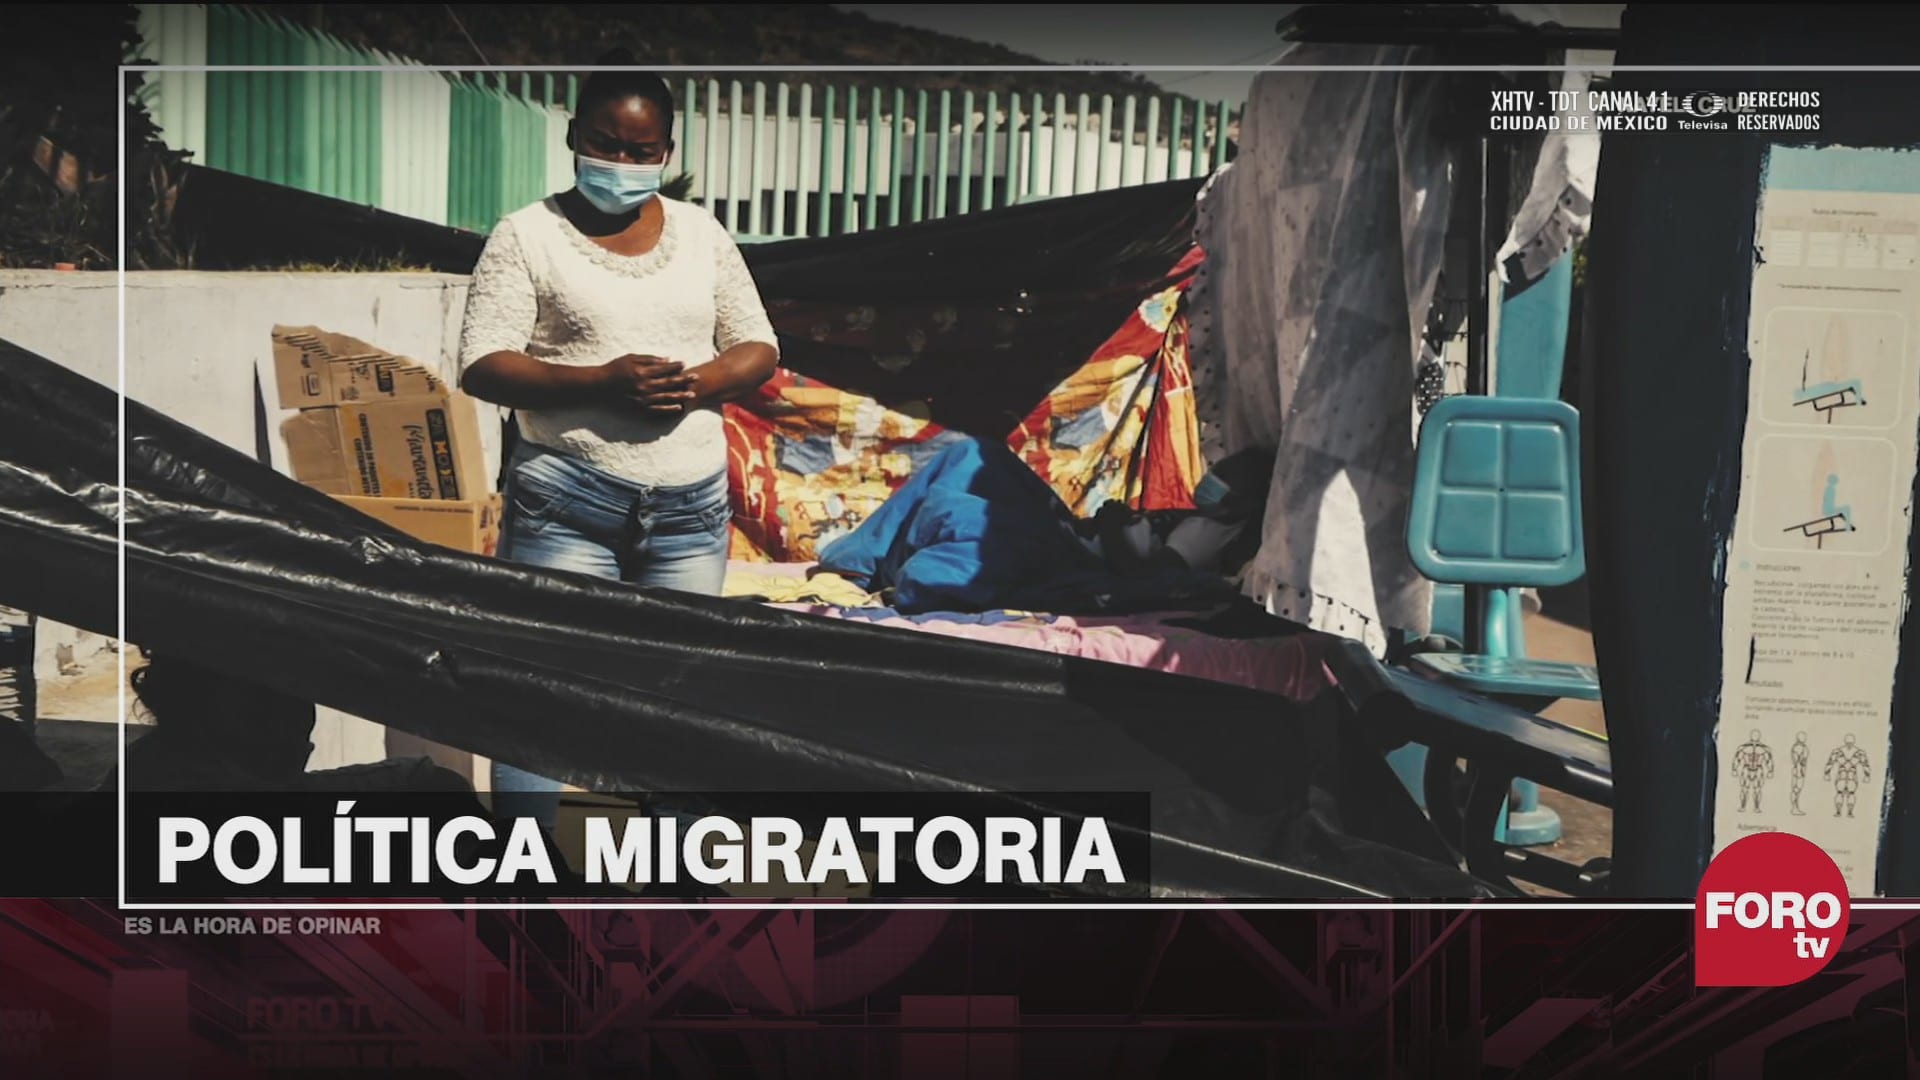 esta empeorando la crisis migratoria en mexico